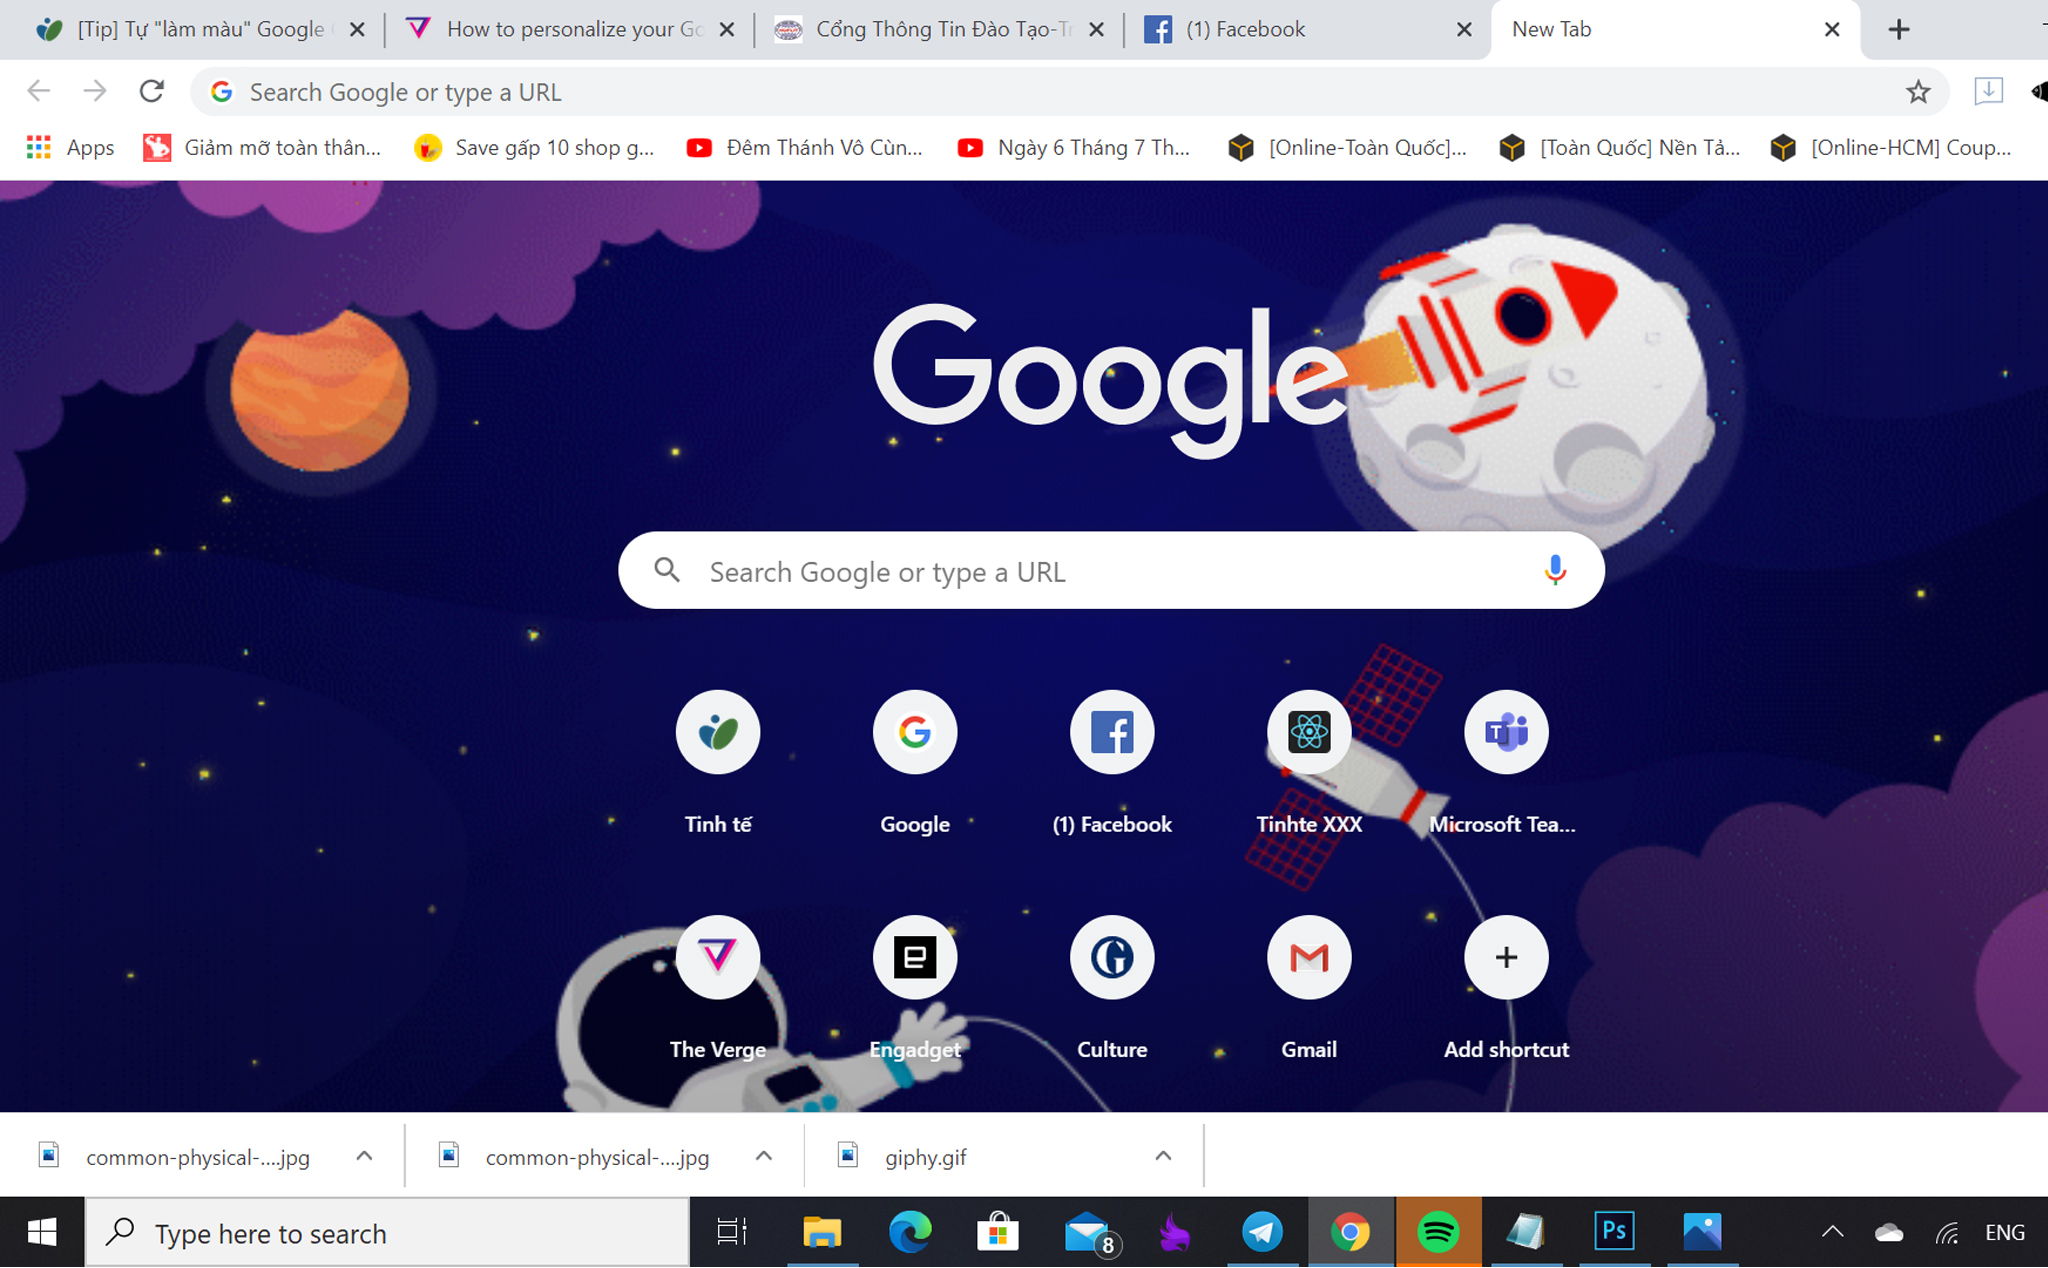 Google Chrome: Tải ngay Google Chrome để trải nghiệm tốc độ lướt web tuyệt vời và khả năng tương thích mạnh mẽ. Với giao diện thân thiện dễ sử dụng, tìm kiếm thông tin và truy cập website trở nên dễ dàng hơn bao giờ hết.